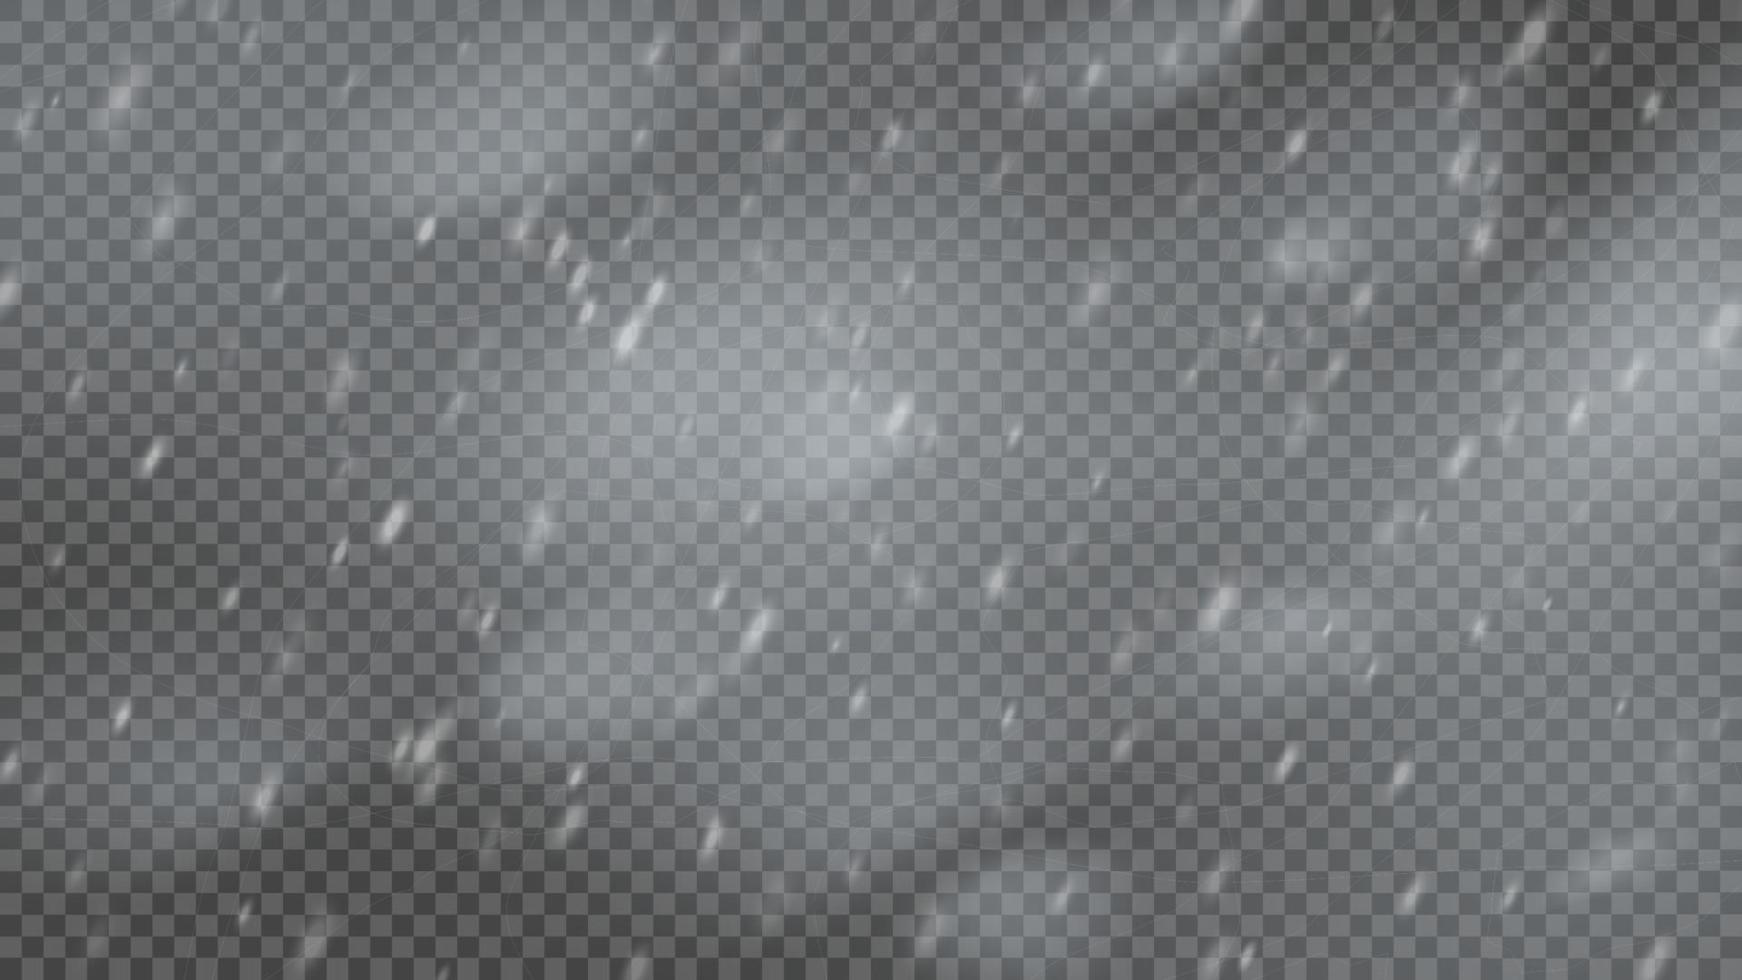 tormenta de nieve y copos de nieve que caen sobre fondo transparente. ventisca de copos de nieve blancos y nieve navideña. ilustración vectorial vector